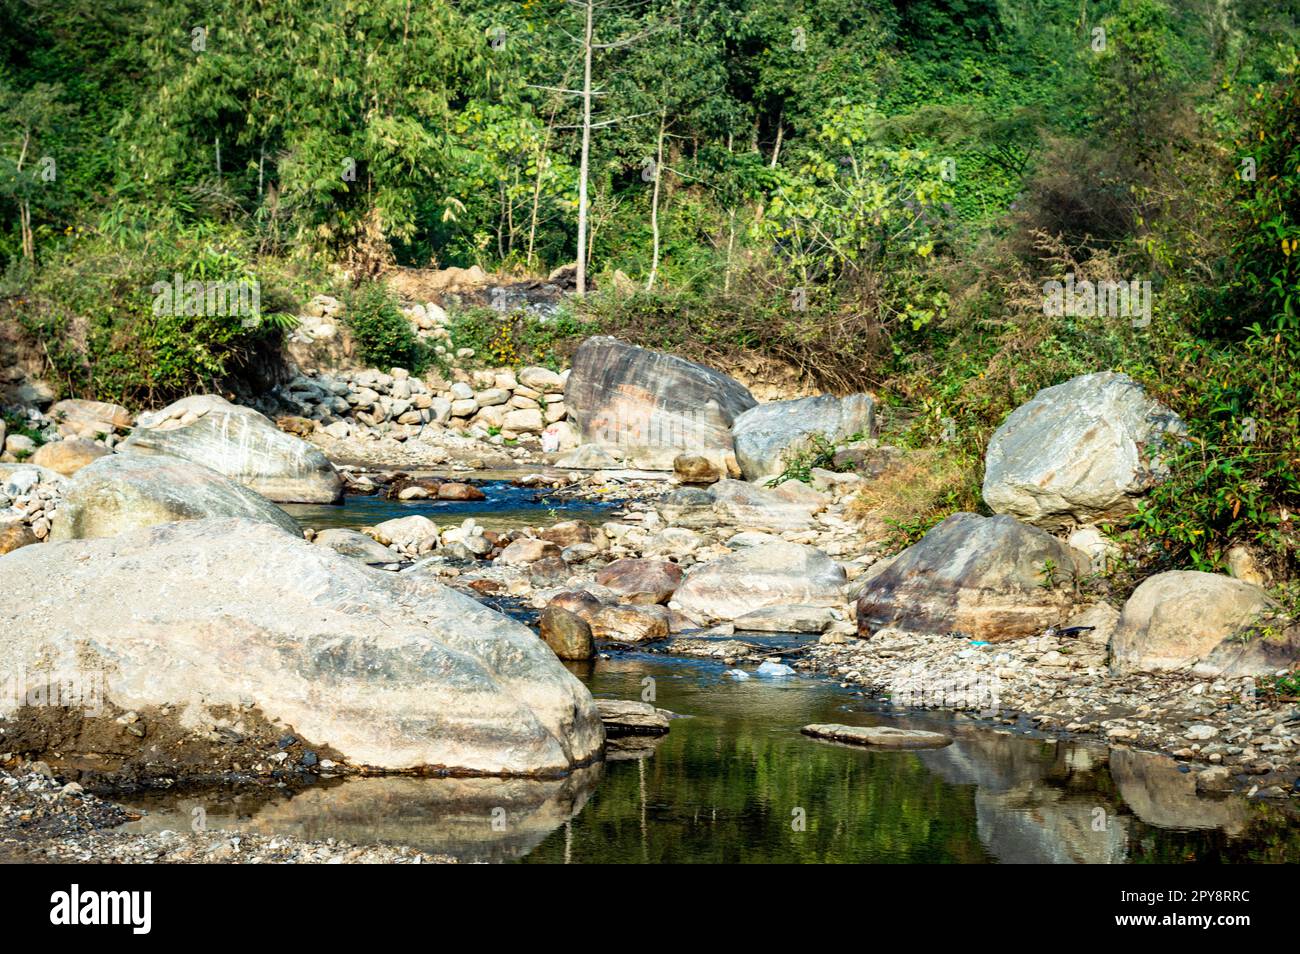 Ein kleiner Fluss quietscht aus dem Mountain Valley in einer engen, gewundenen Passage. Rangbang River Mountain Valley Mirik West Bengal Indien Südasiatisch-pazifischer Raum Stockfoto